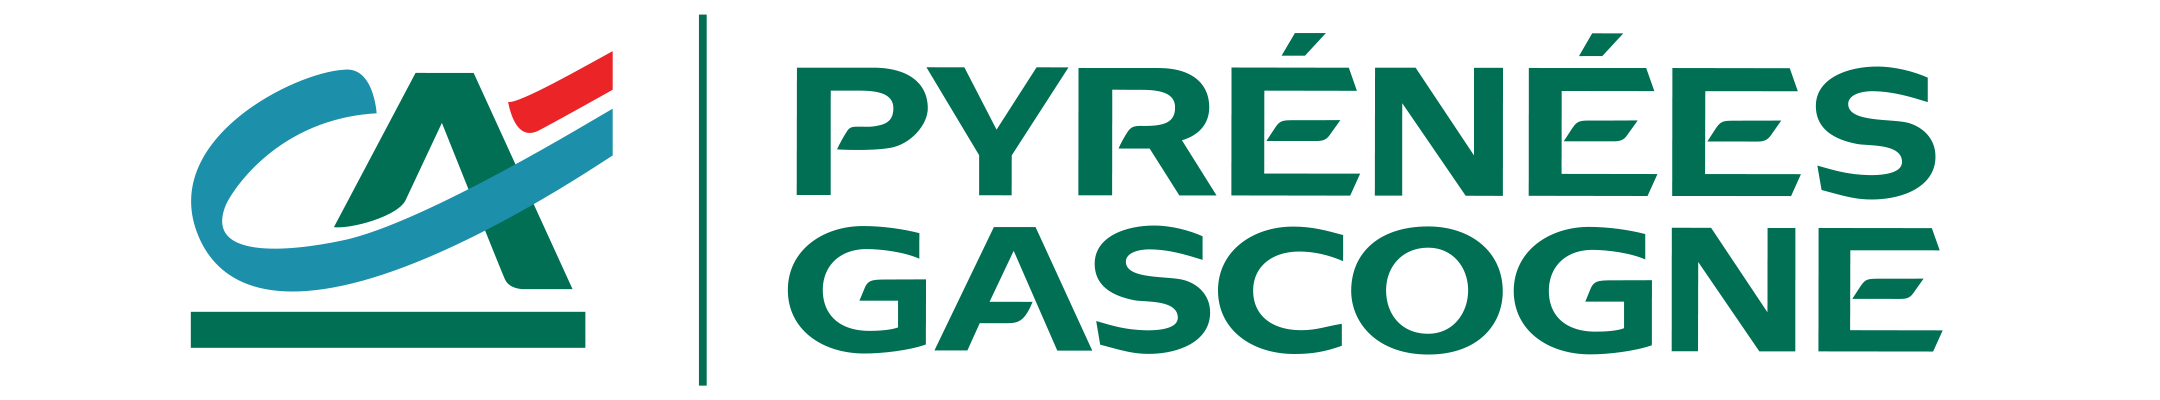 Logo CA PG